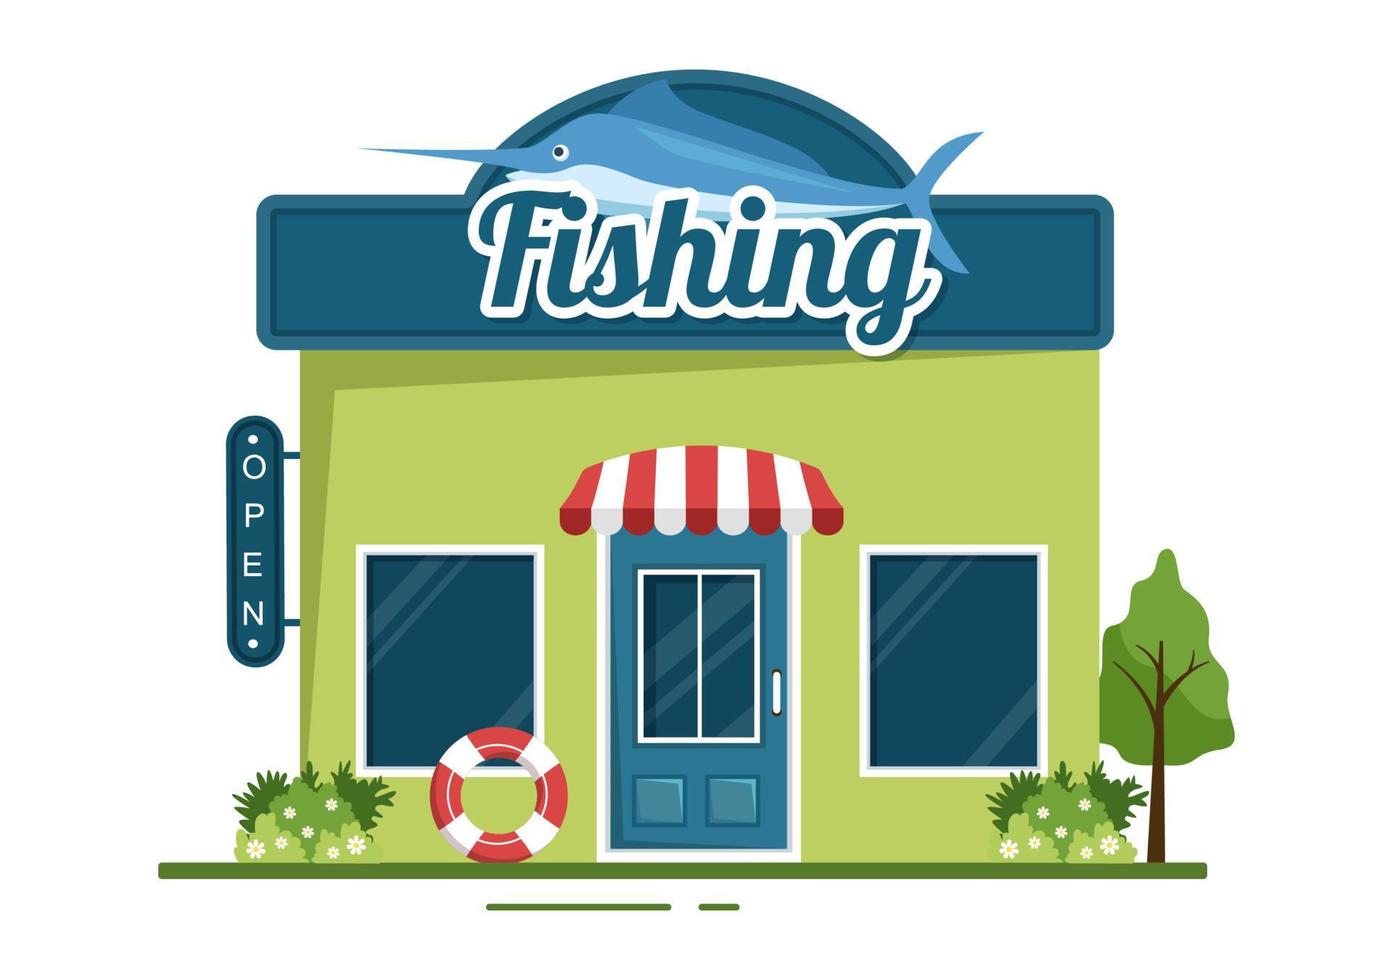 tienda de pesca que vende varios equipos de pesca, cebos, accesorios para la captura de peces o artículos en dibujos animados planos dibujados a mano ilustración de plantillas vector